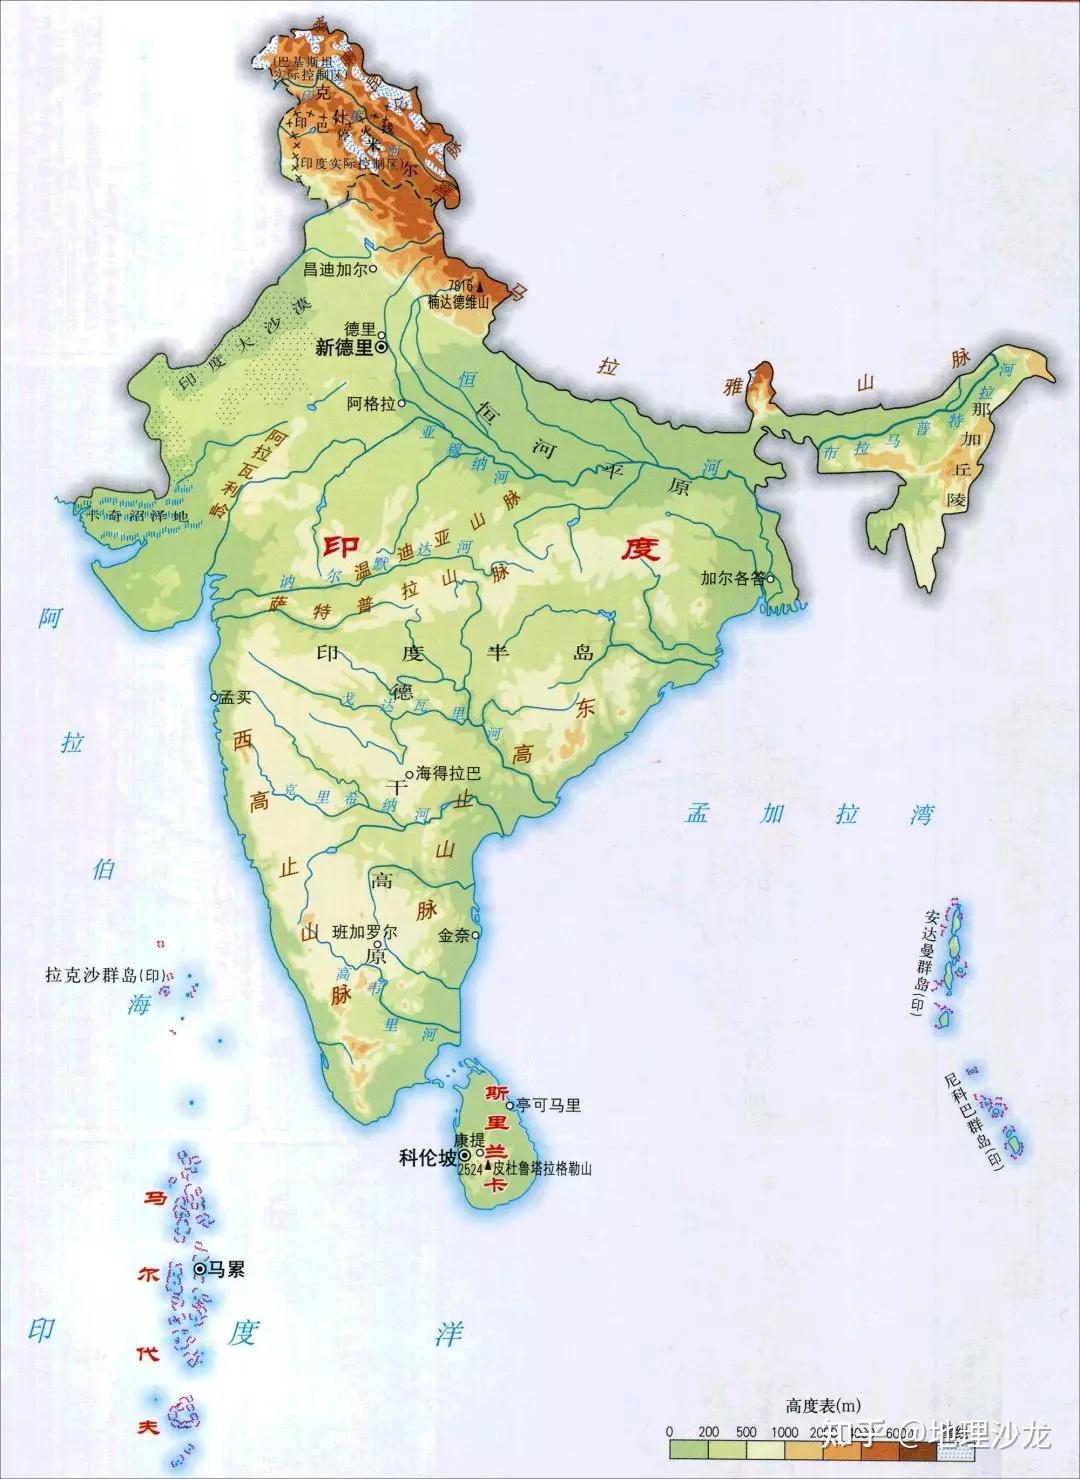 印度地形图首先,印度人口身体素质和文化素质较低.